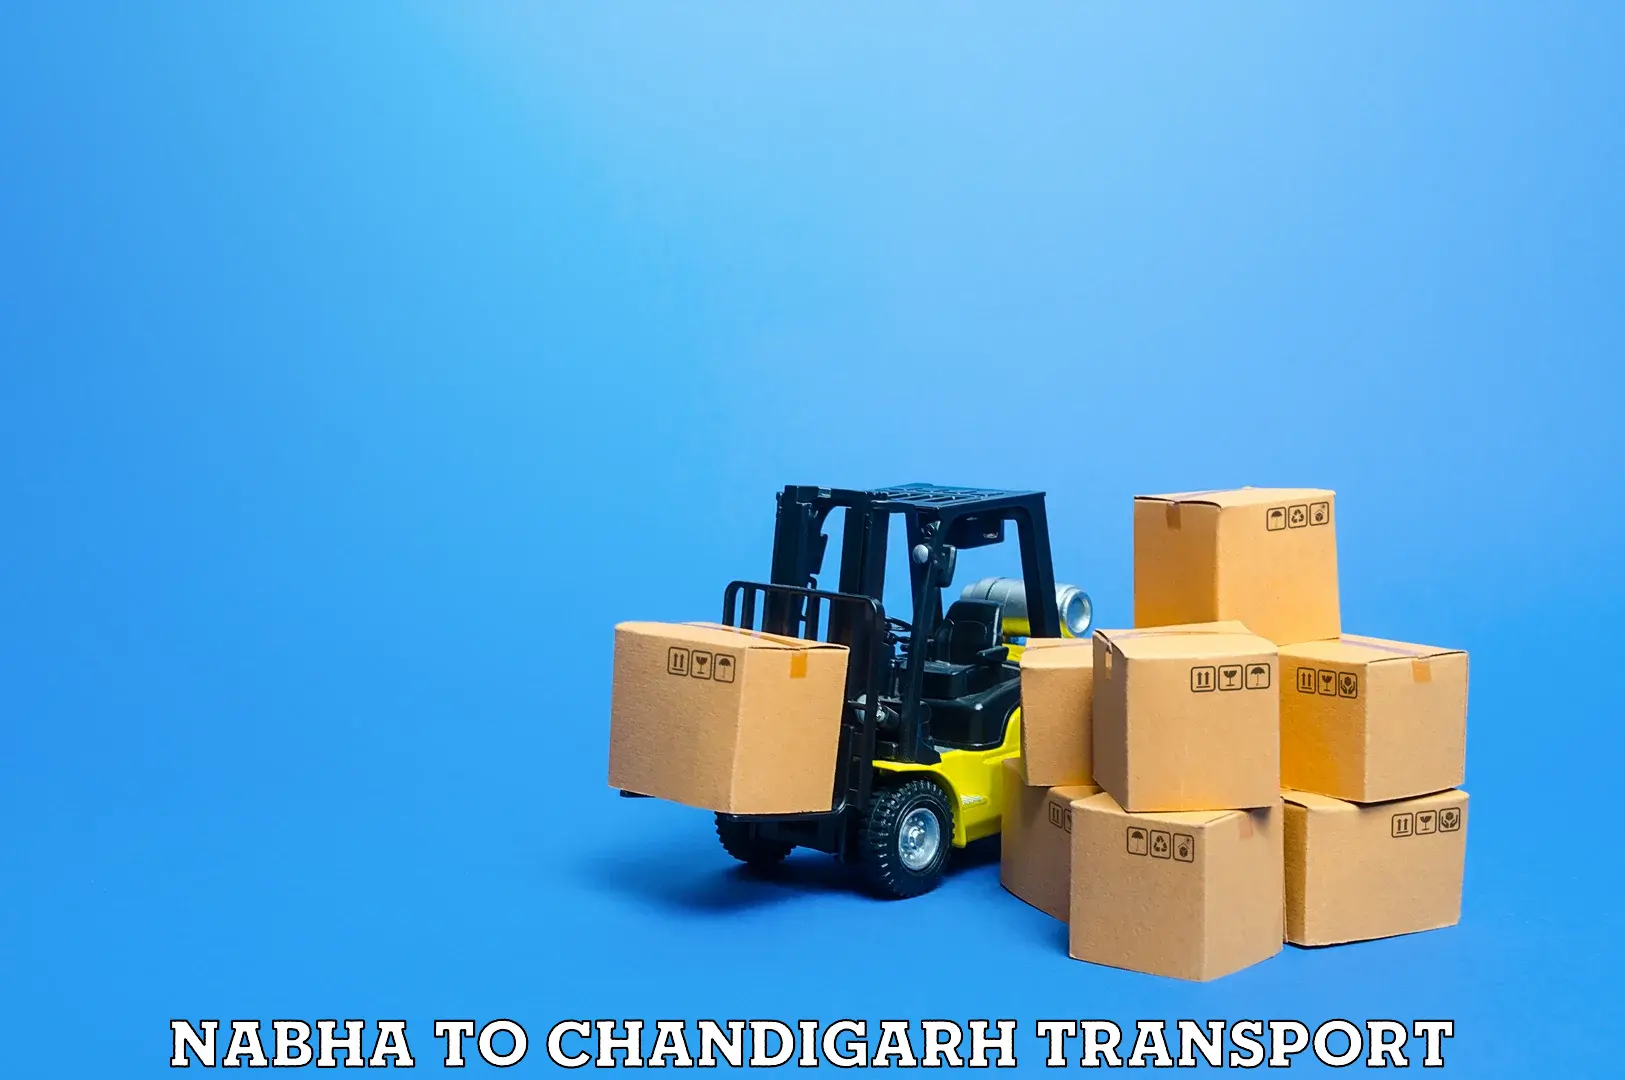 Bike shipping service Nabha to Chandigarh